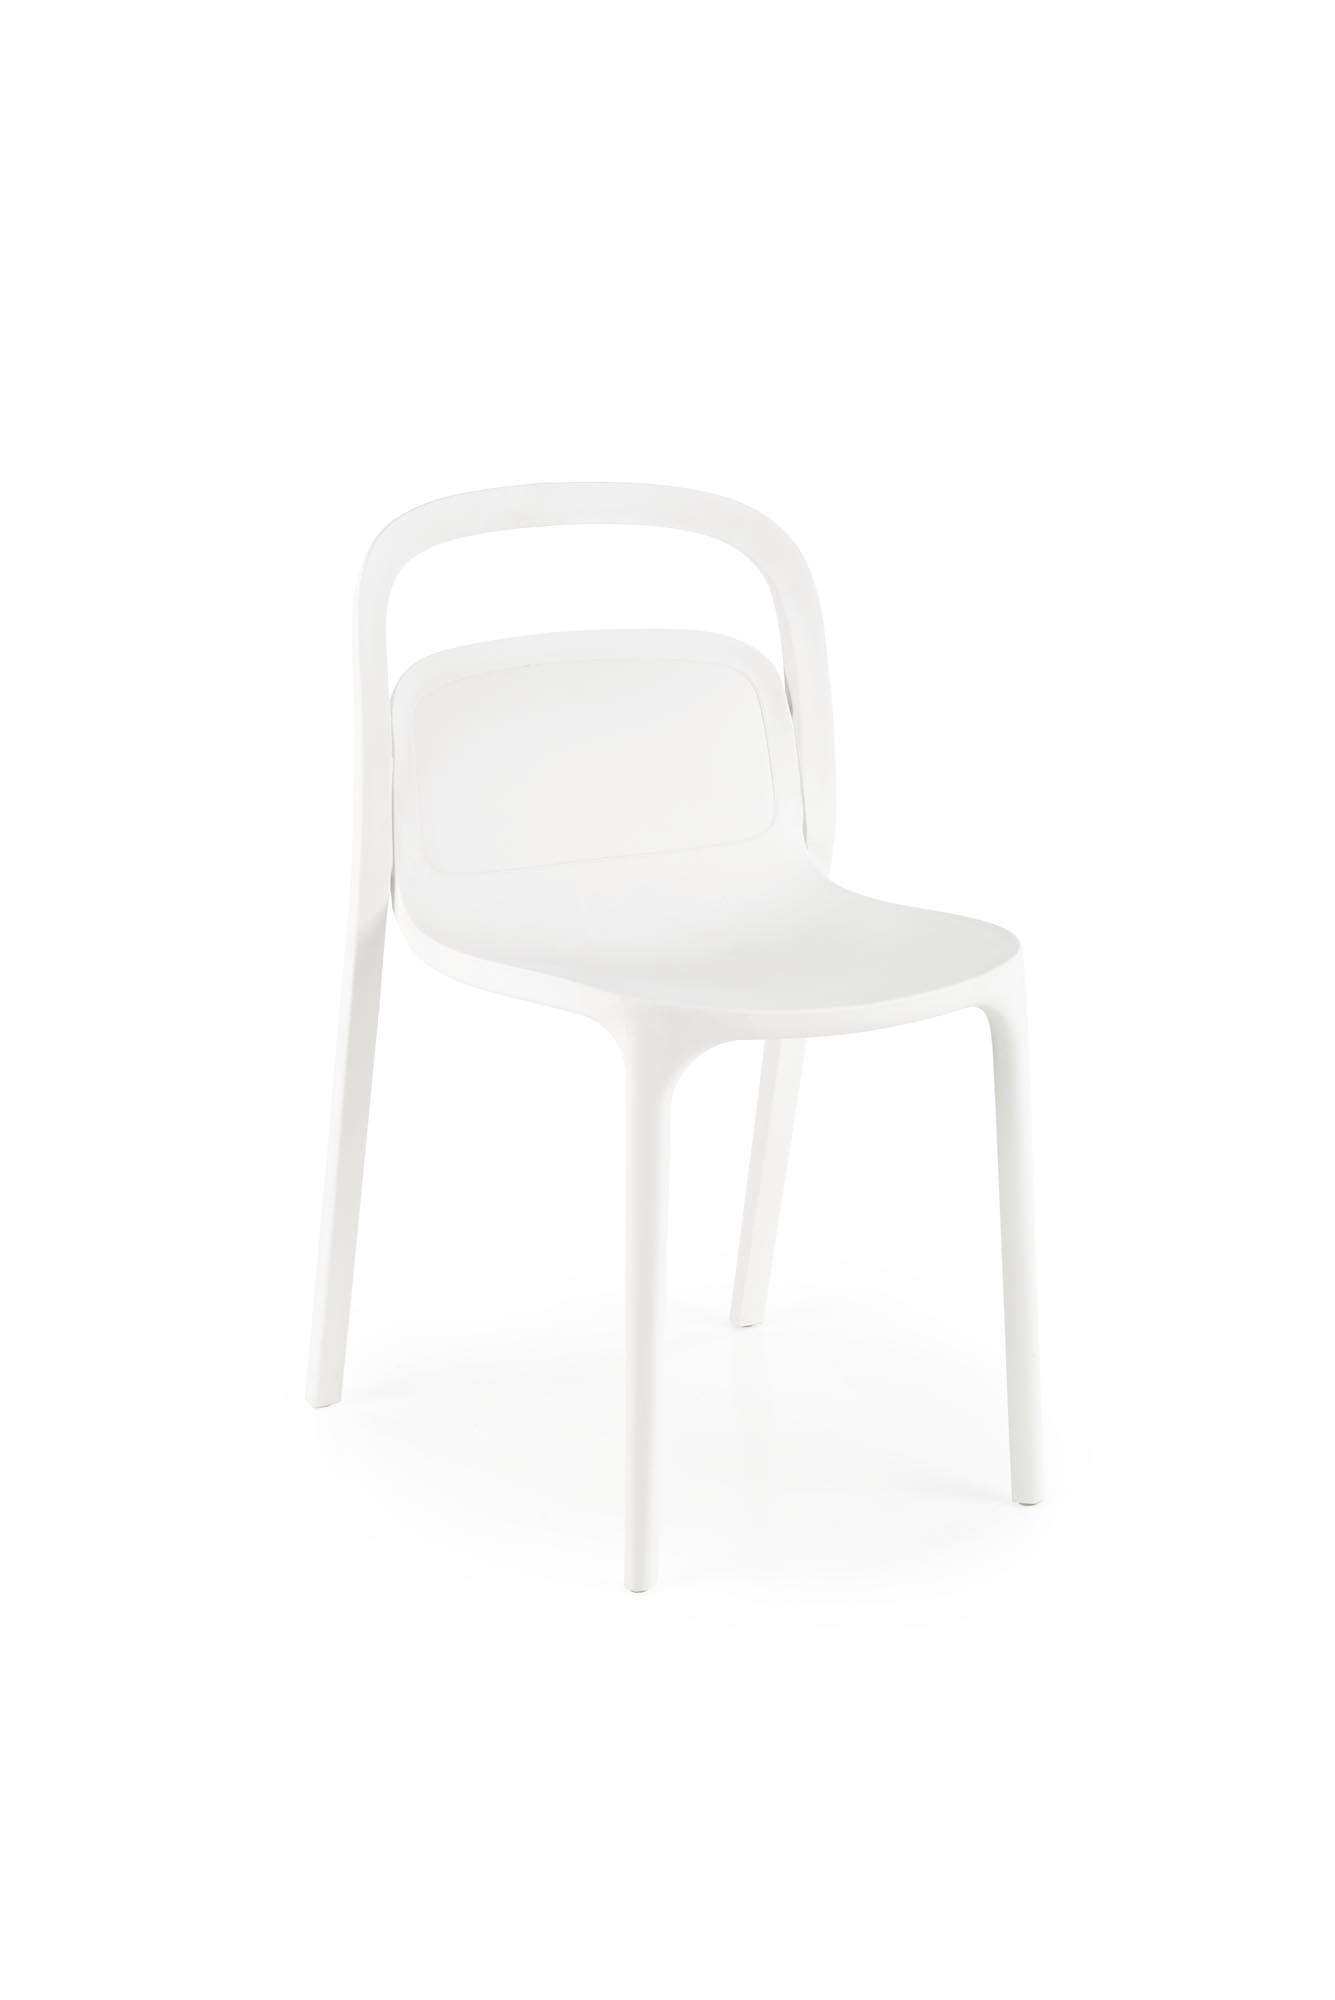 Krzesło z tworzywa sztucznego K490 - biały krzesło z tworzywa sztucznego k490 - biały